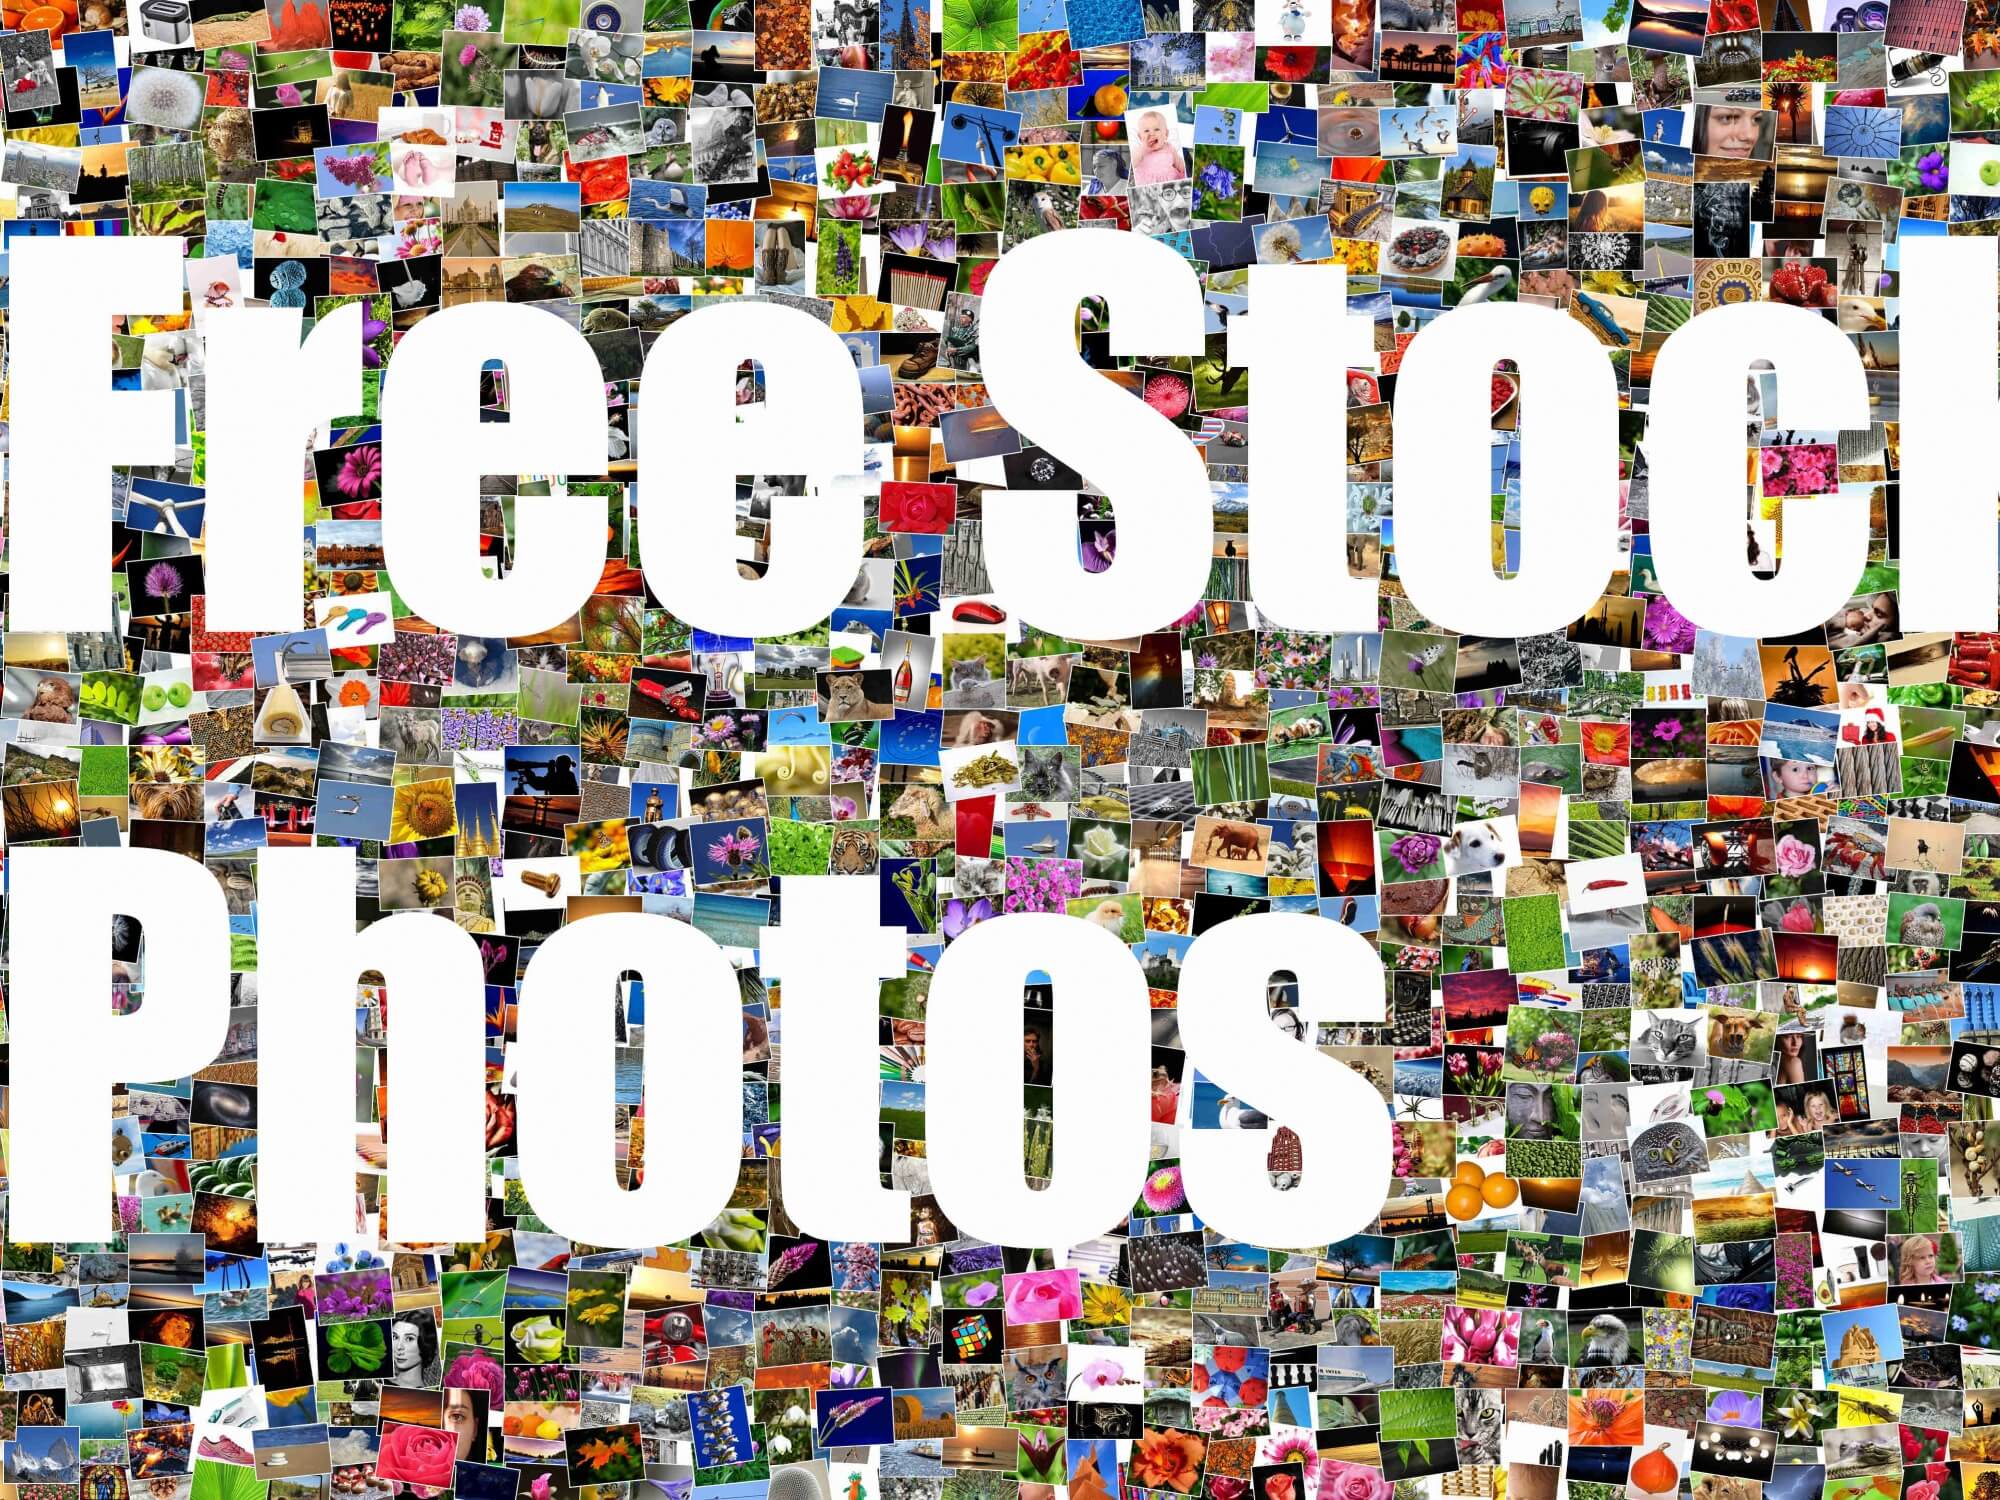 free-stock-photos